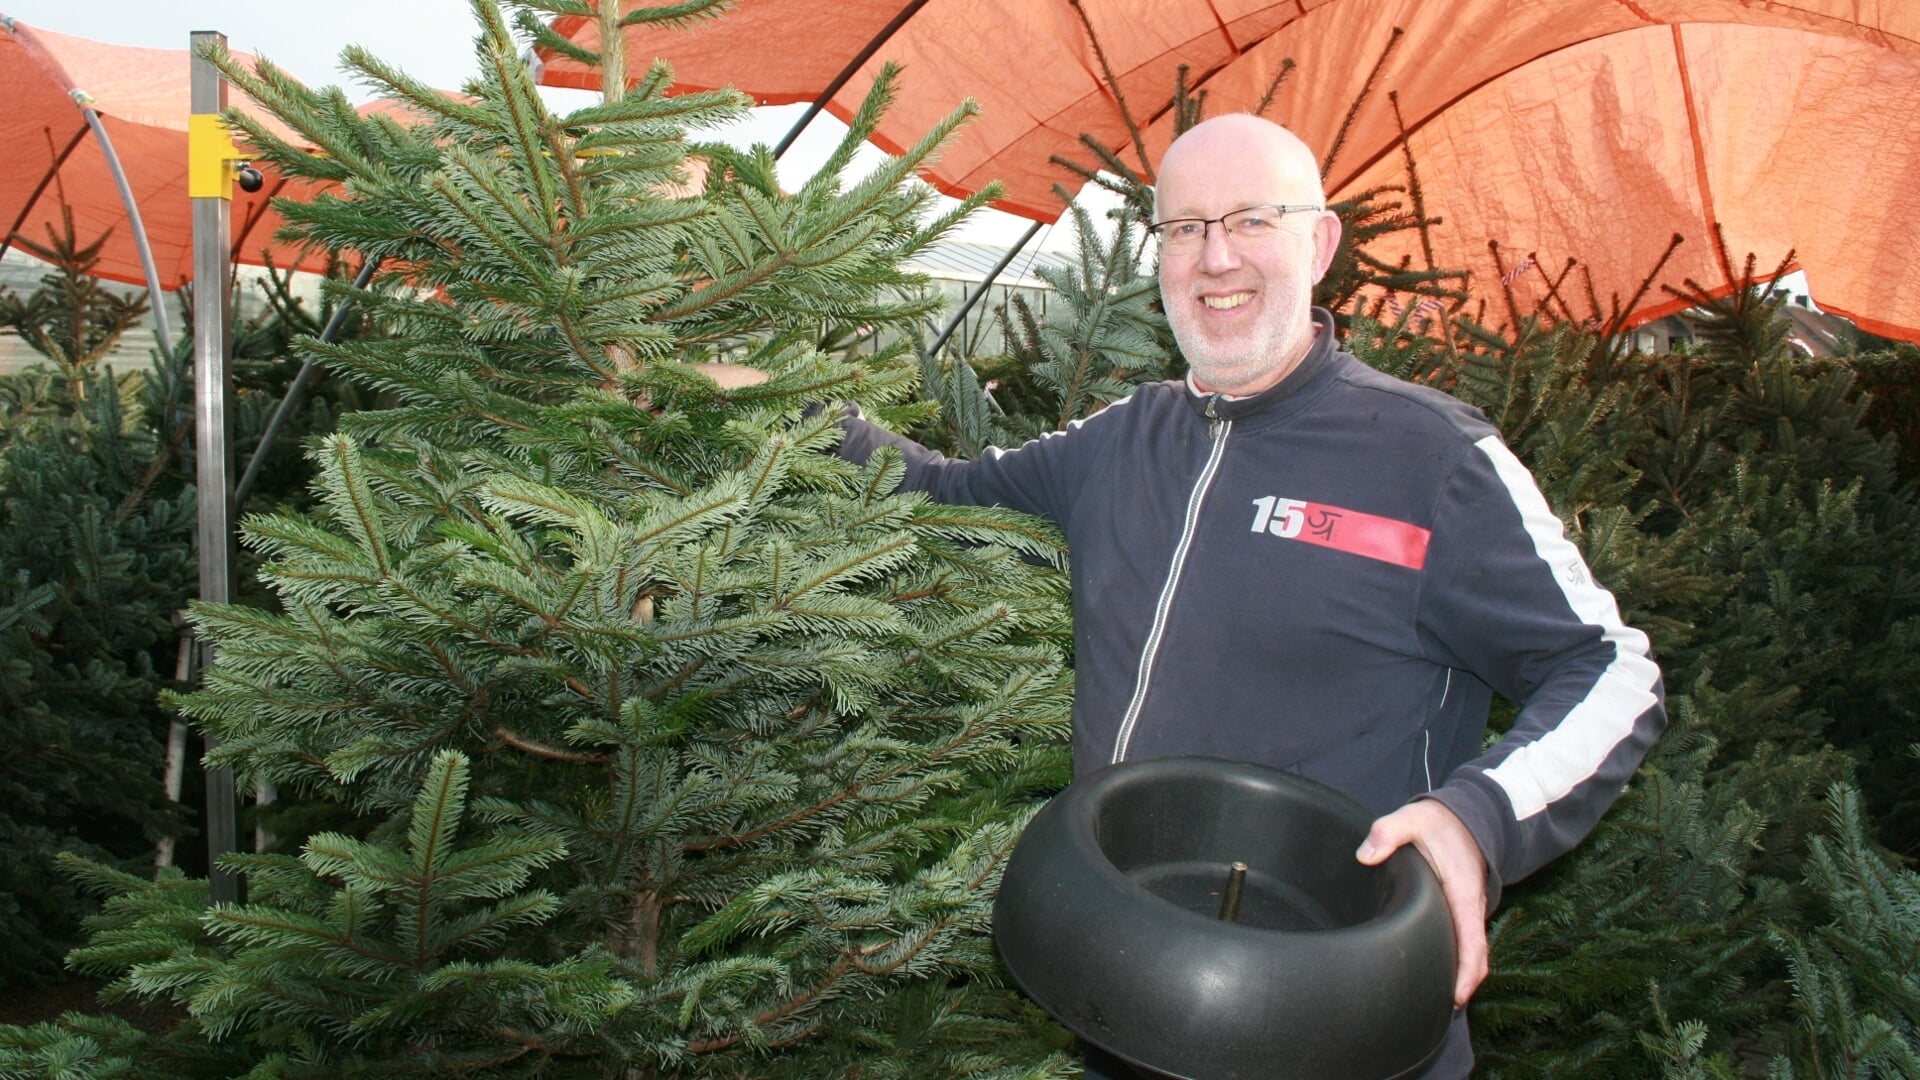 Remco Eggenhuizen met kerstboom en EasyFix kerstbomenstandaard.